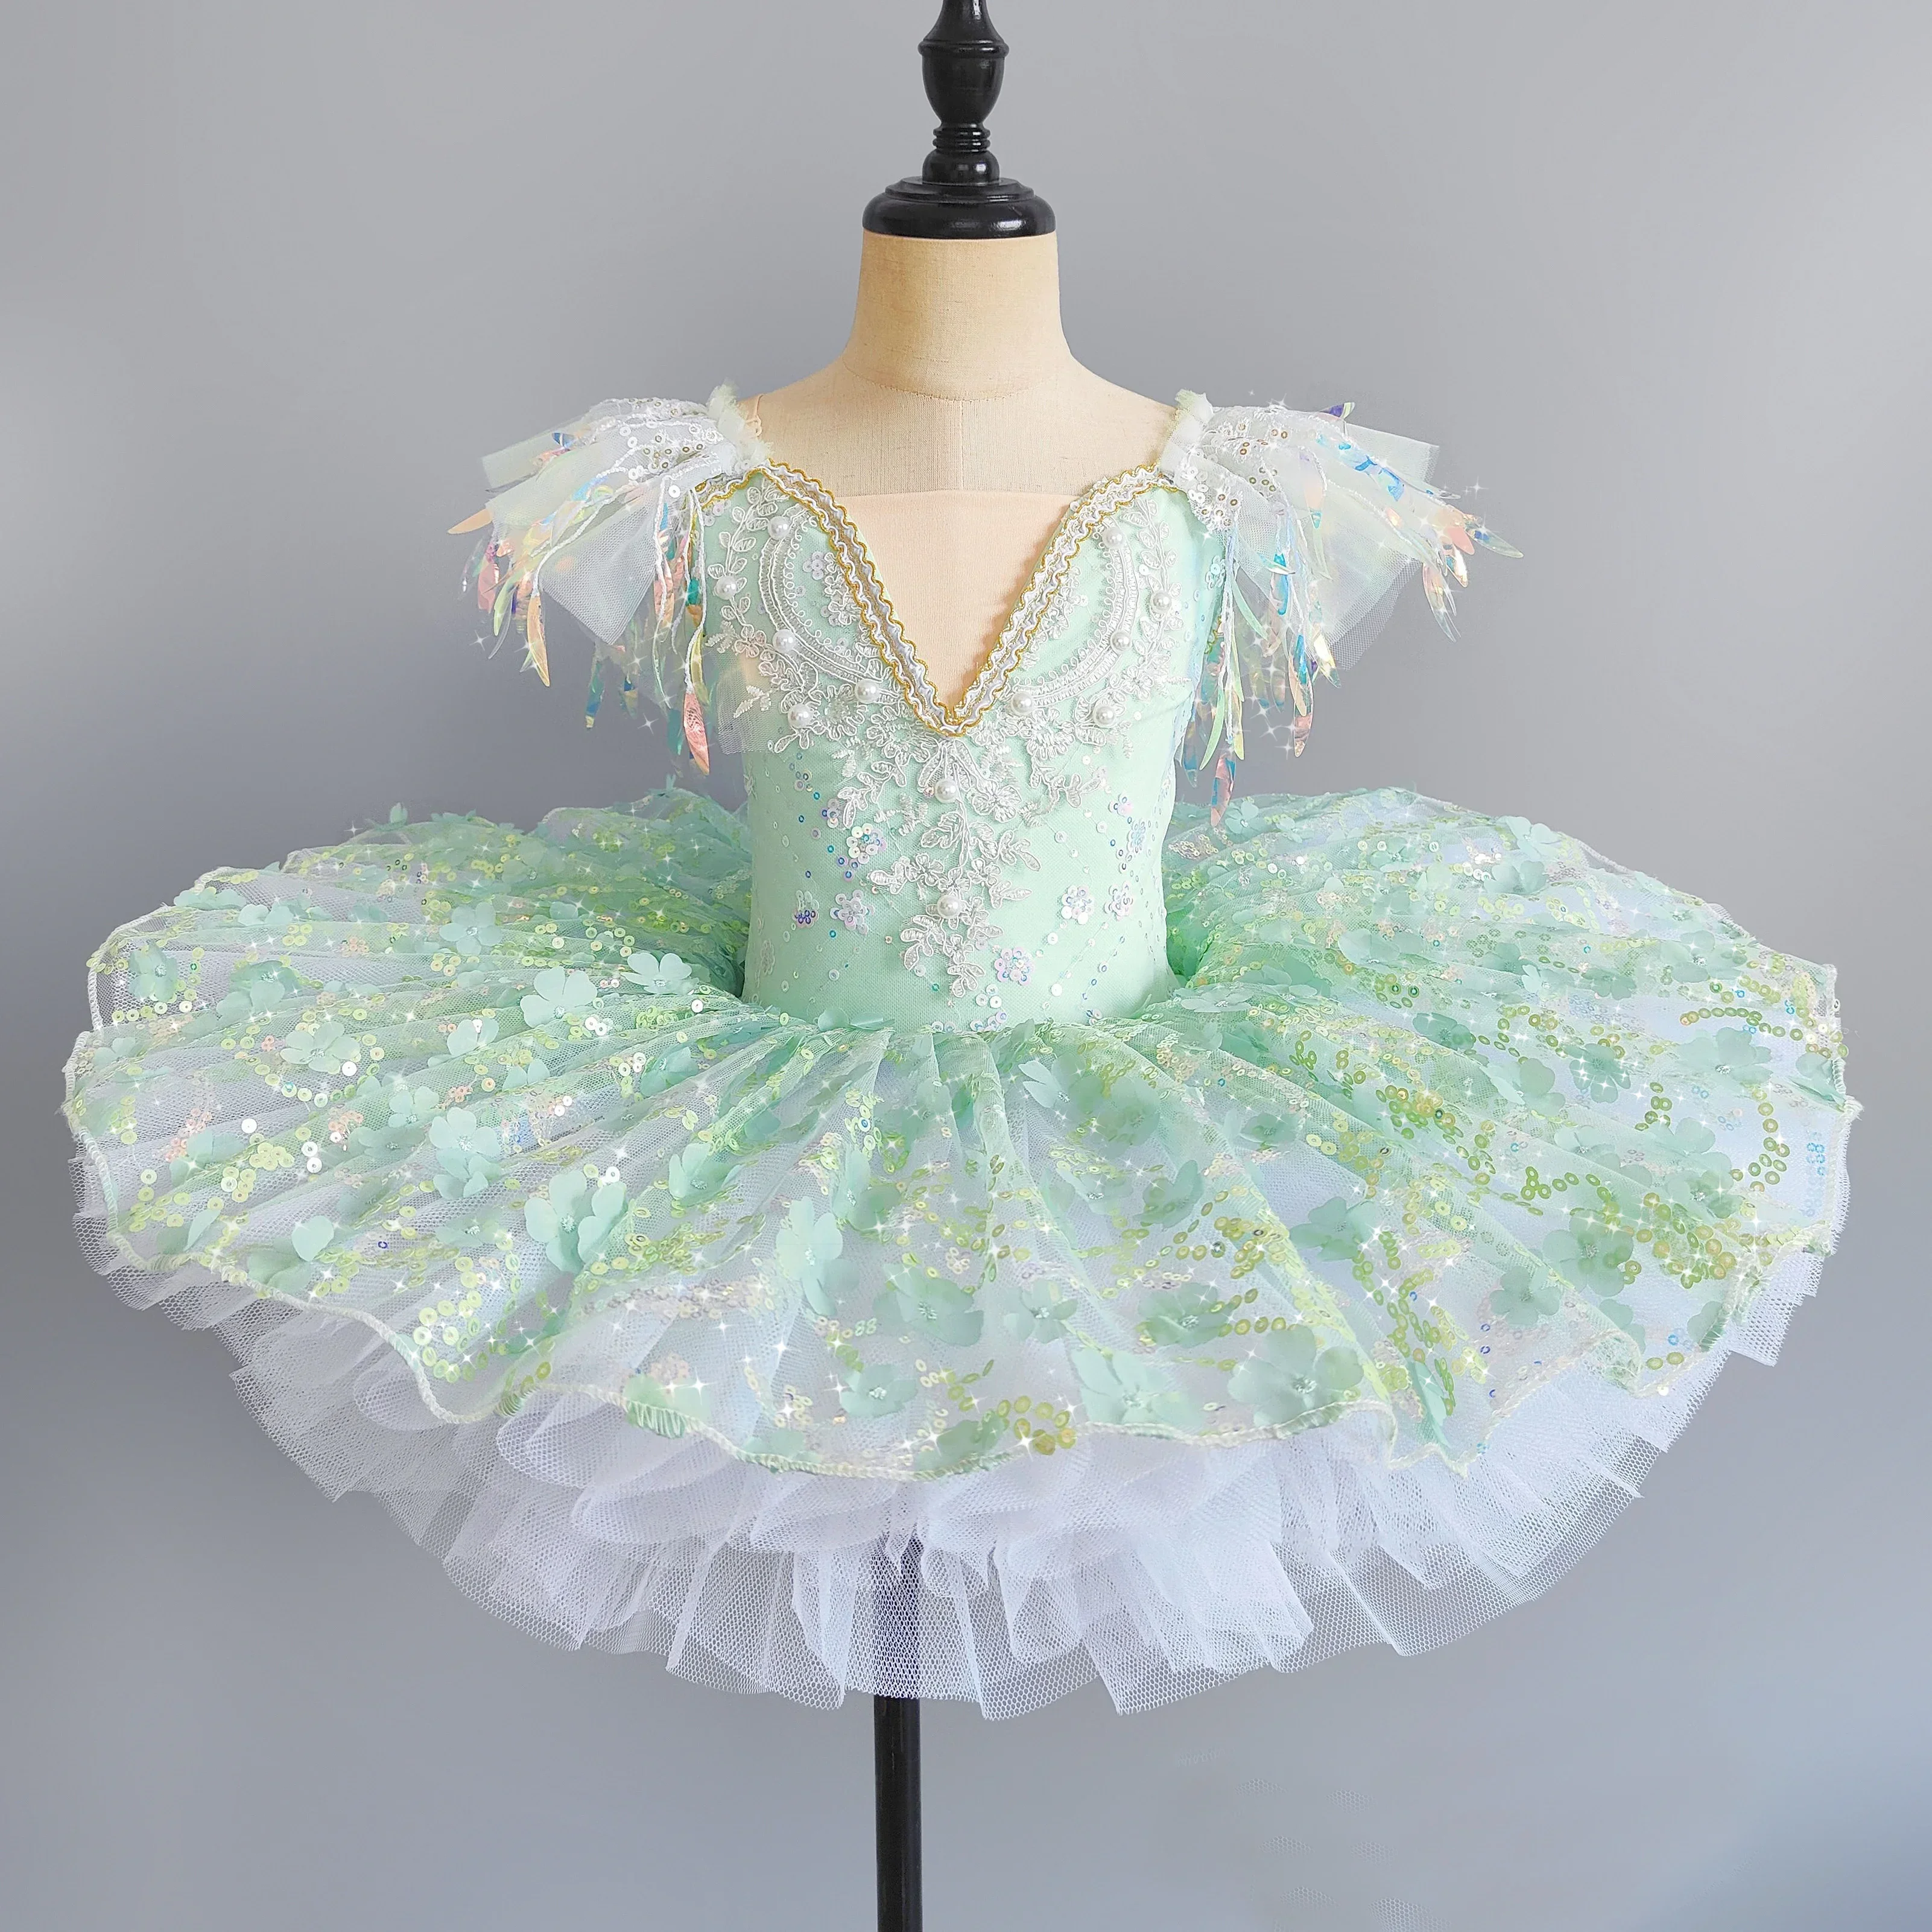 

Розовая детская одежда для бальных танцев, балетное платье с блестками и цветами для девочек, платье-пачка для современных танцев, платье принцессы для балета